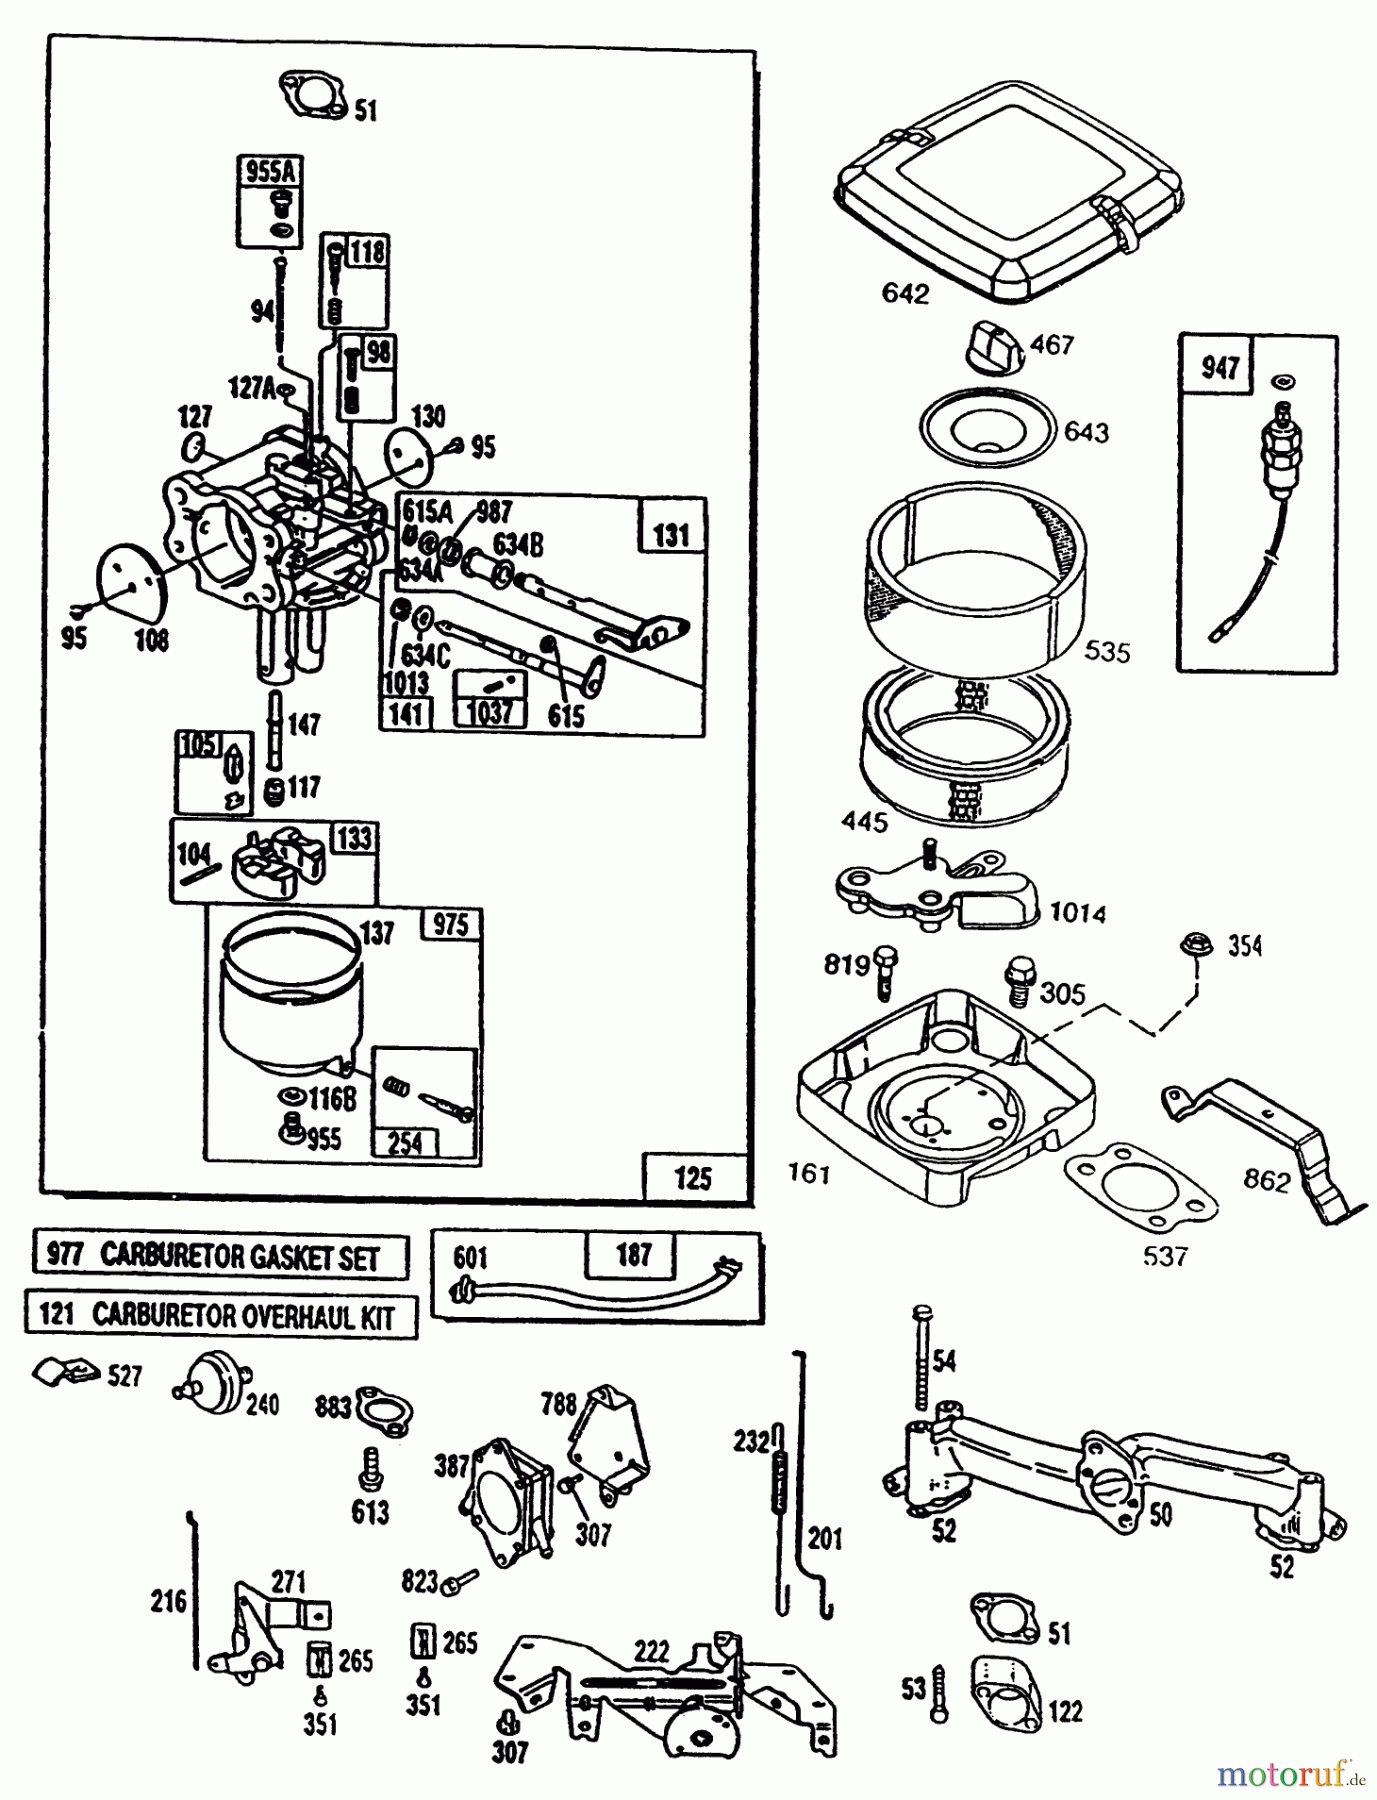  Toro Neu Mowers, Lawn & Garden Tractor Seite 1 72101 (246-H) - Toro 246-H Yard Tractor, 1993 (3900001-3999999) ENGINE TORO POWER PLUS #2